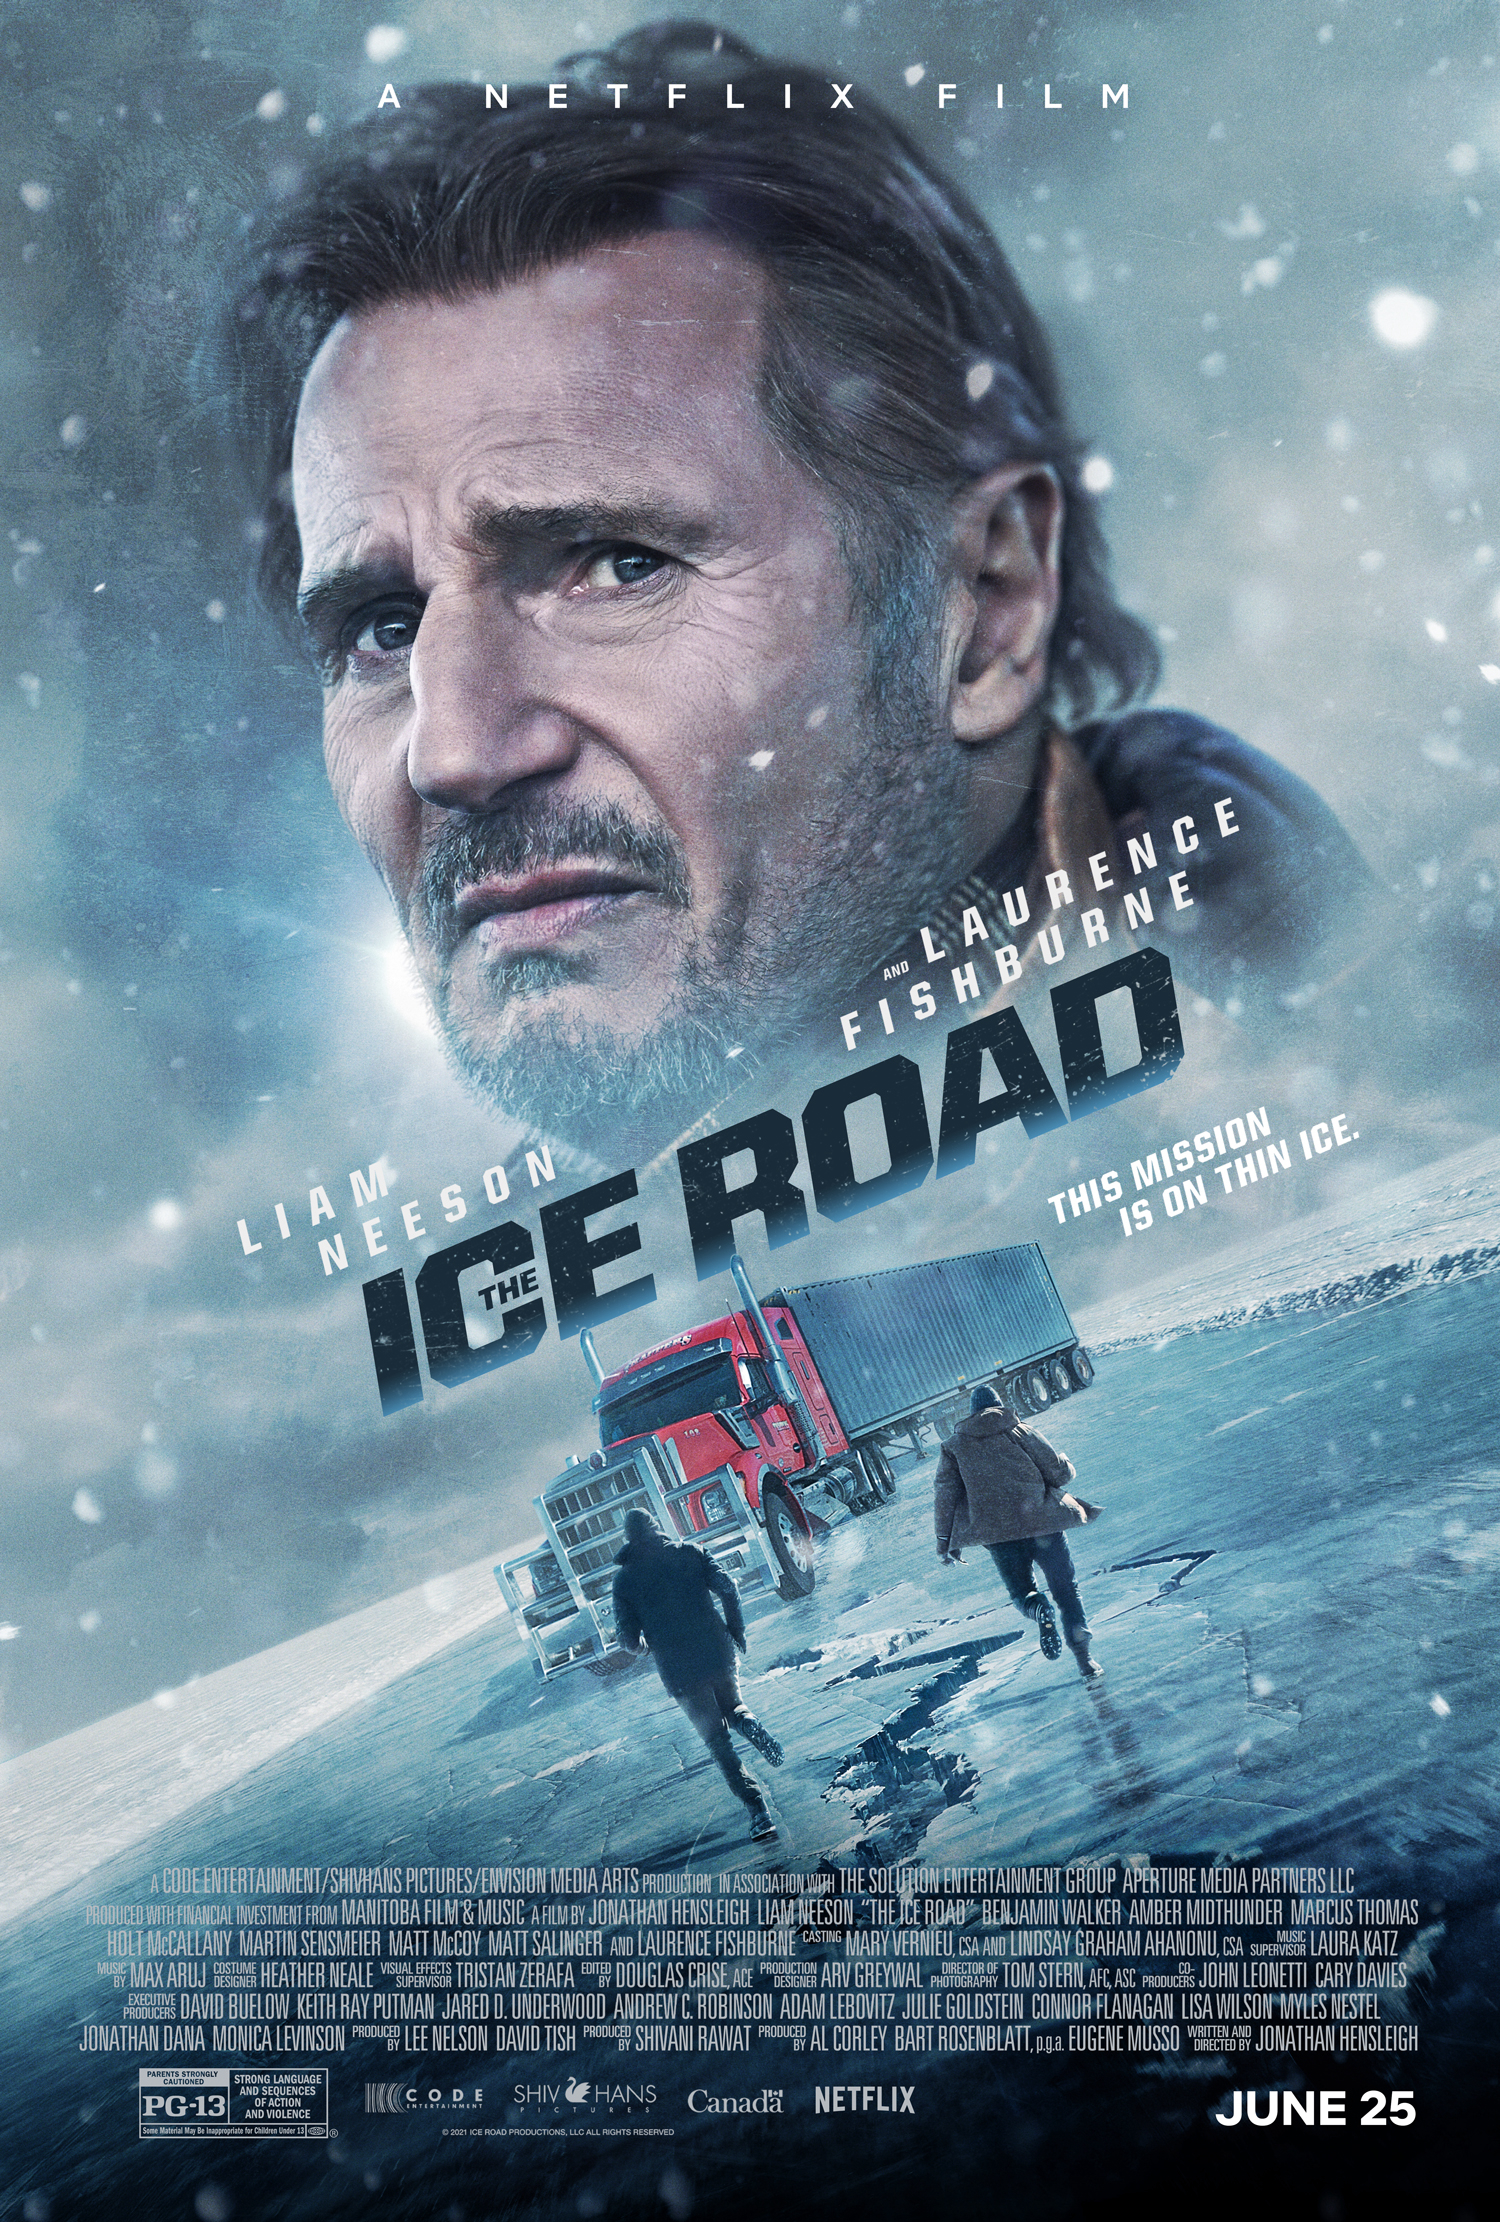 Con Đường Băng - The Ice Road